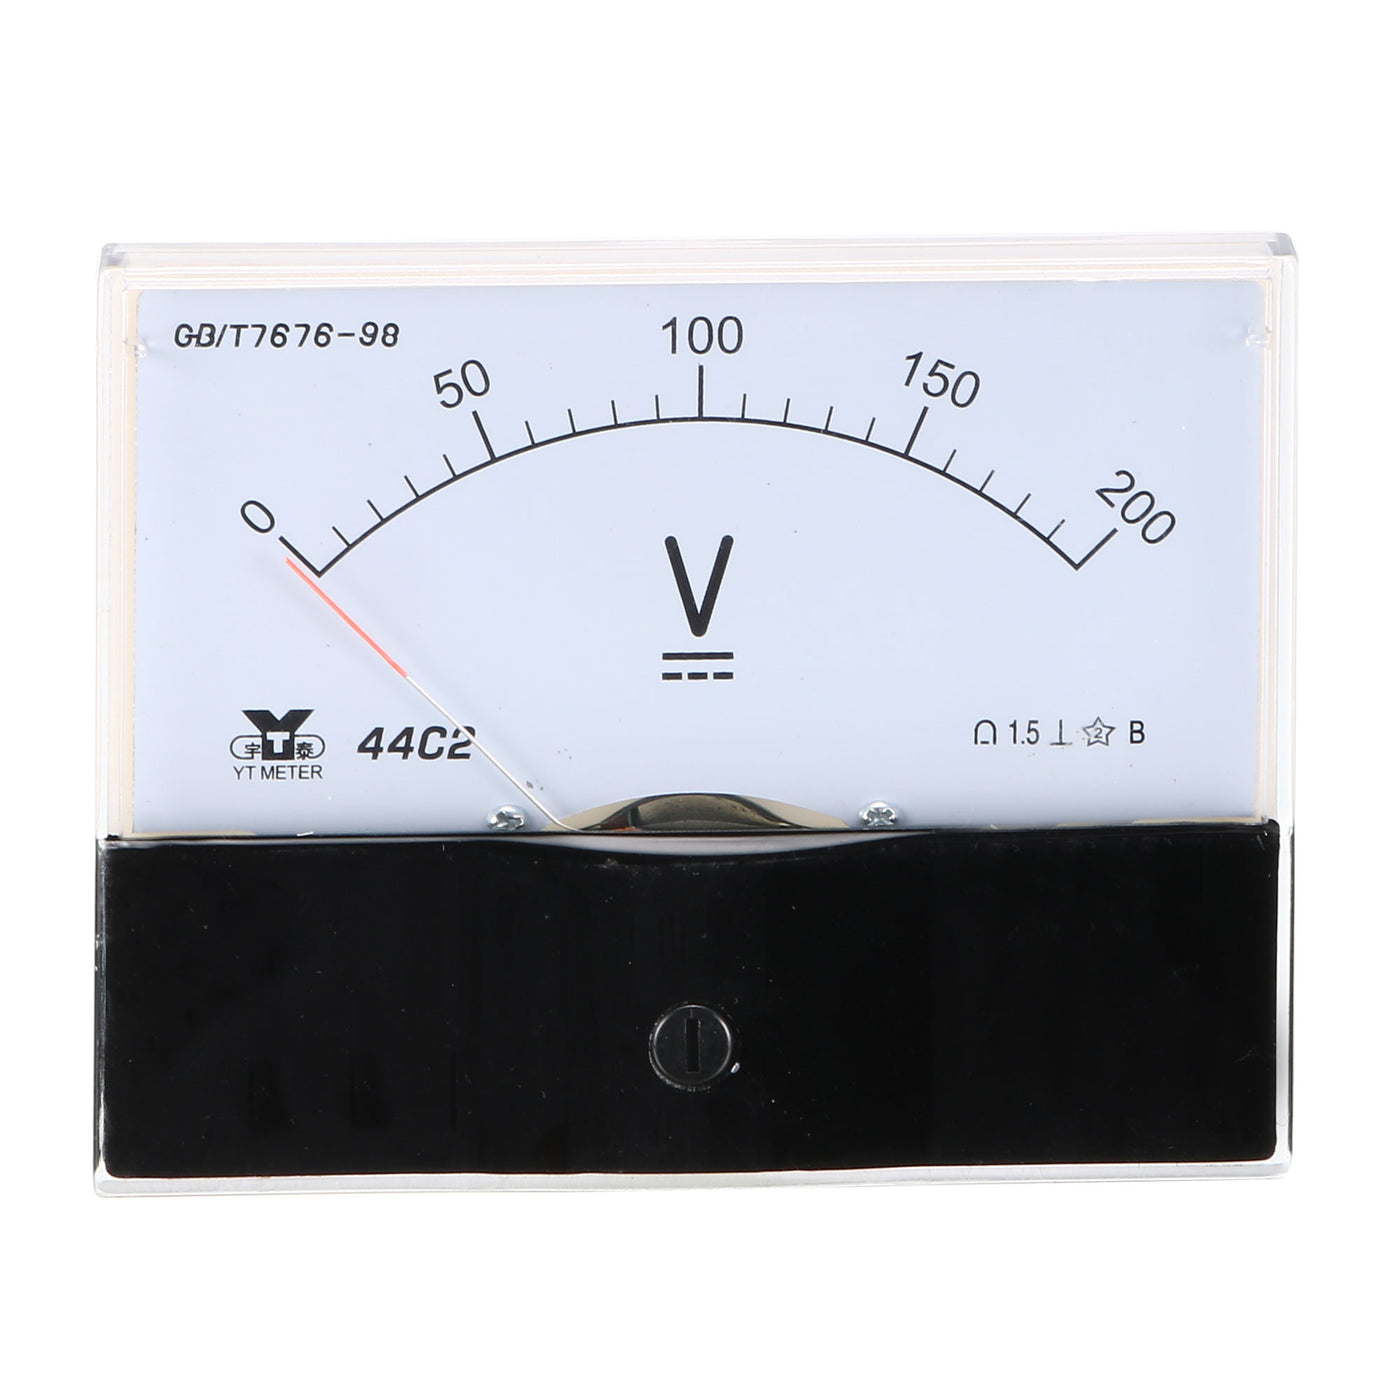 uxcell Uxcell Rectangle Measurement Tool Analog Panel Voltmeter Volt Meter DC 0 - 200V Measuring Range 44C2